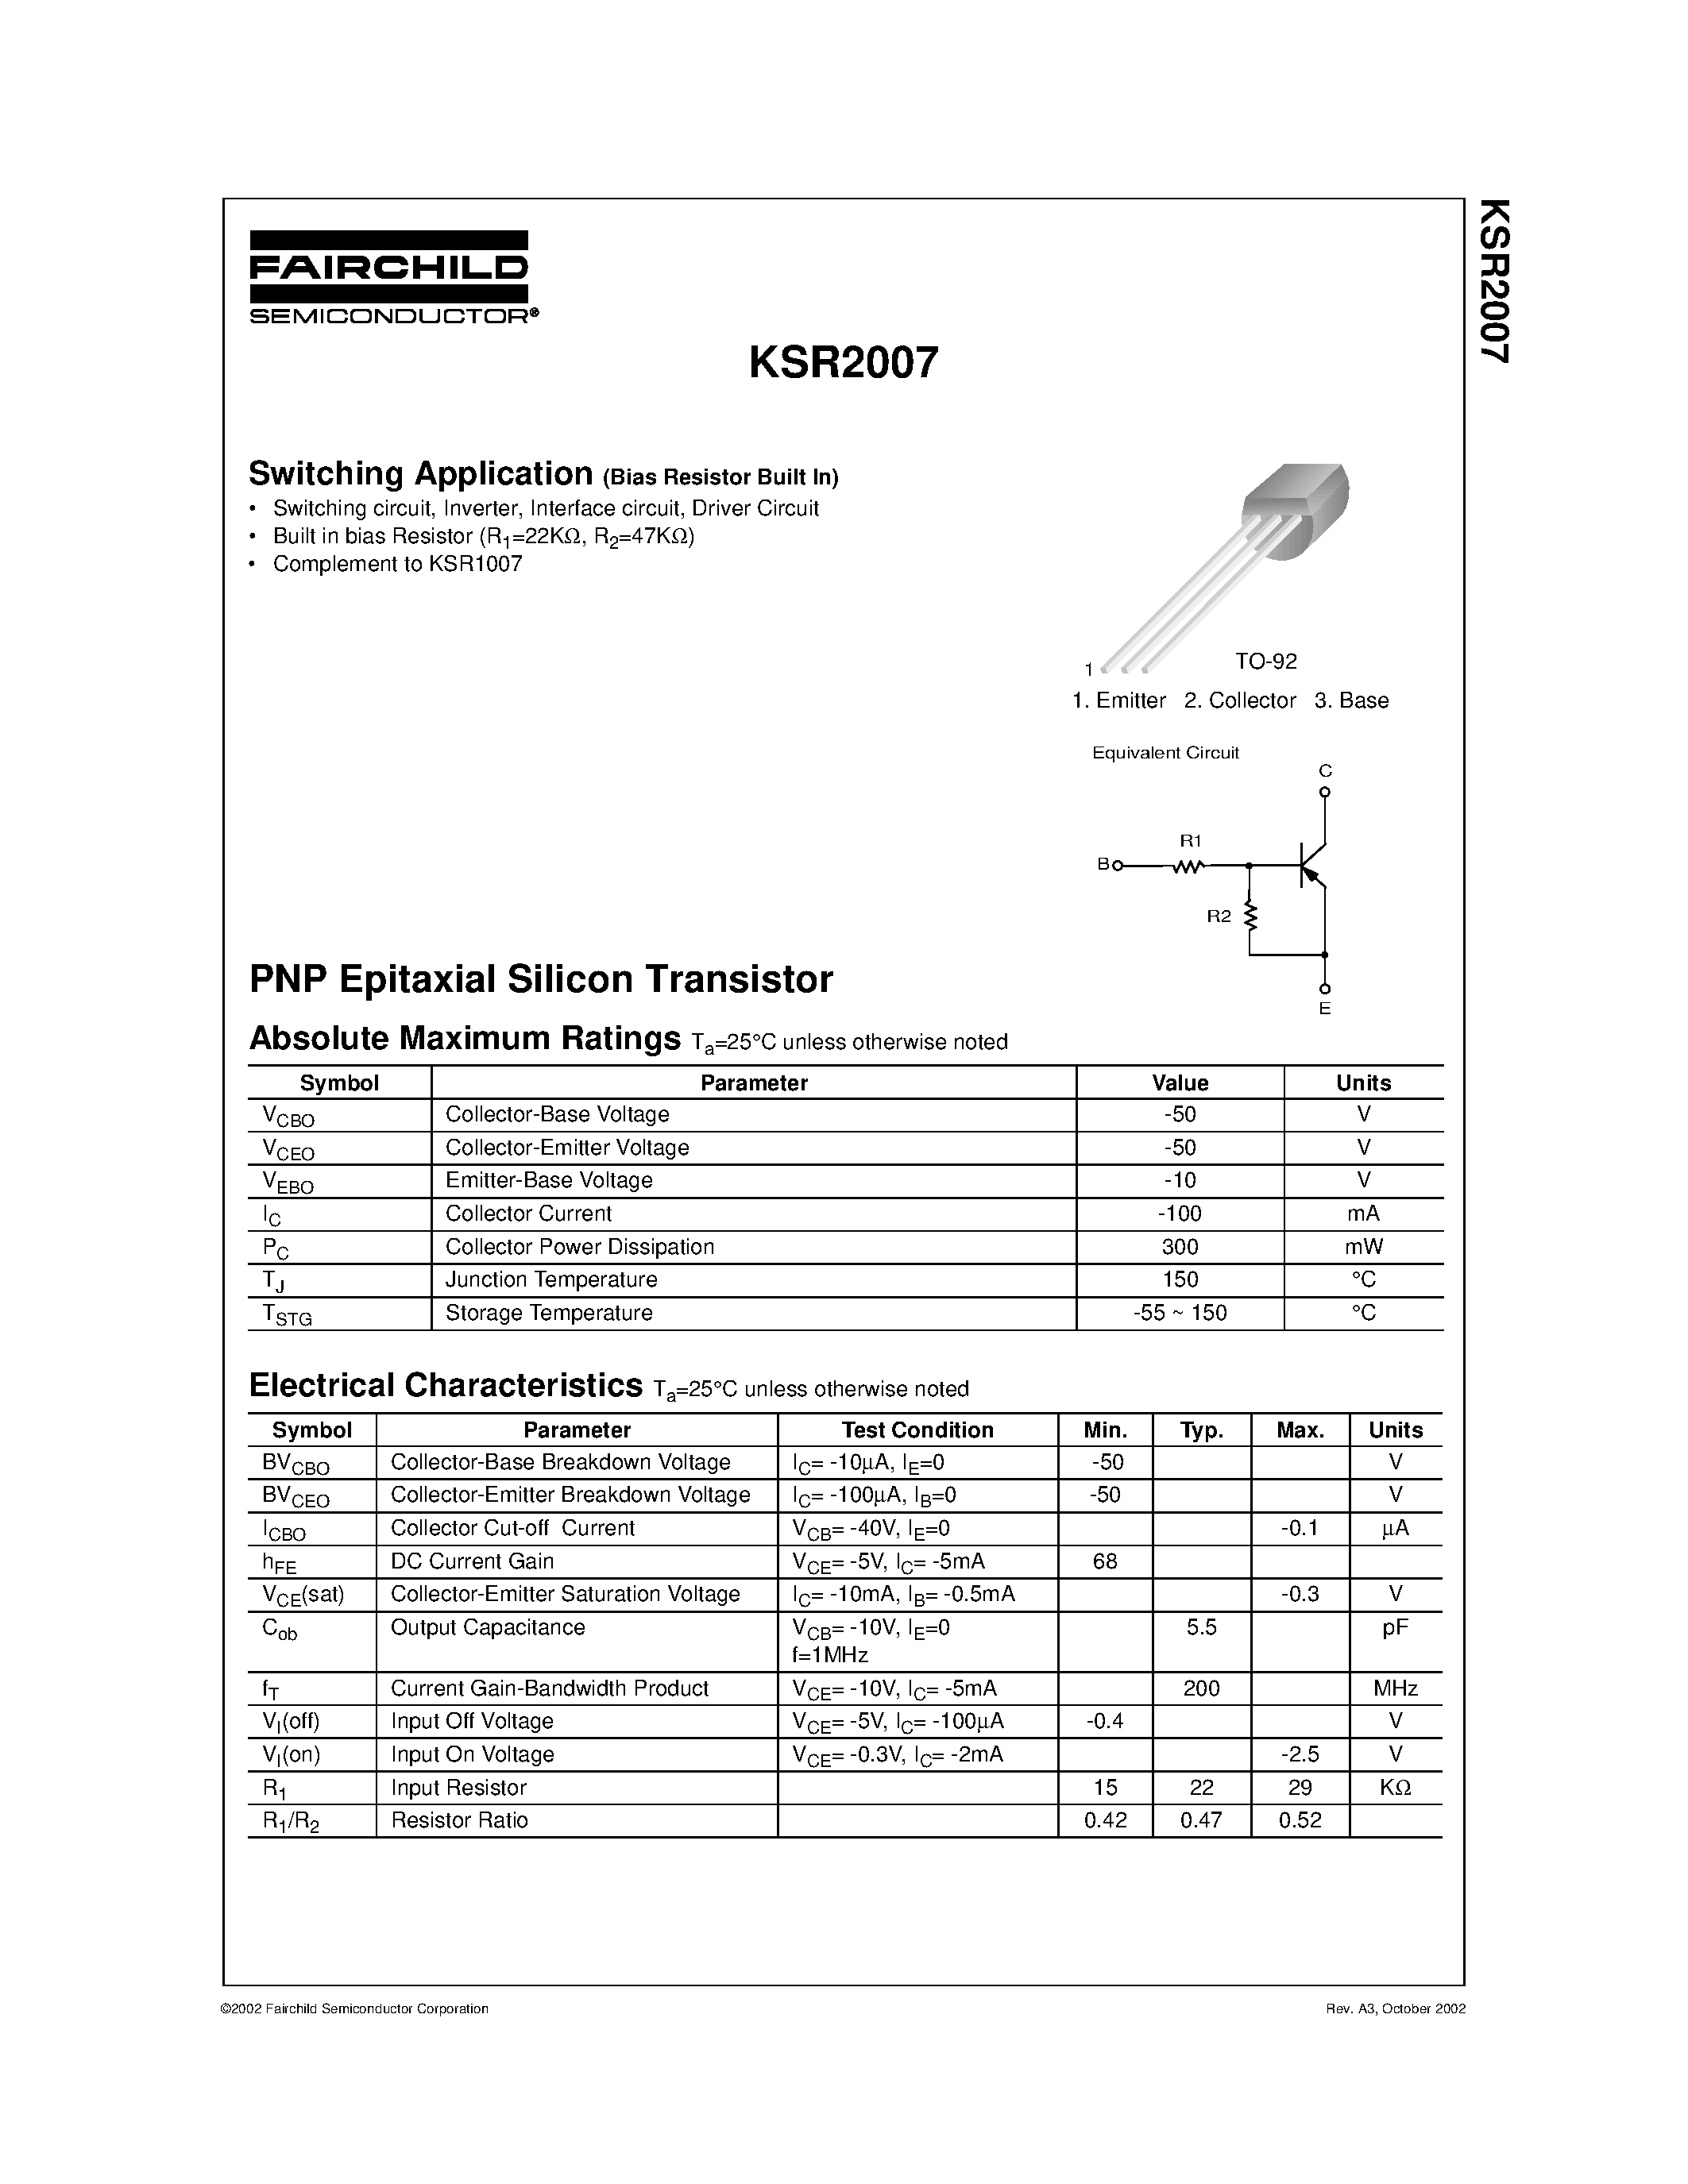 Даташит KSR2007 - Switching Application страница 1